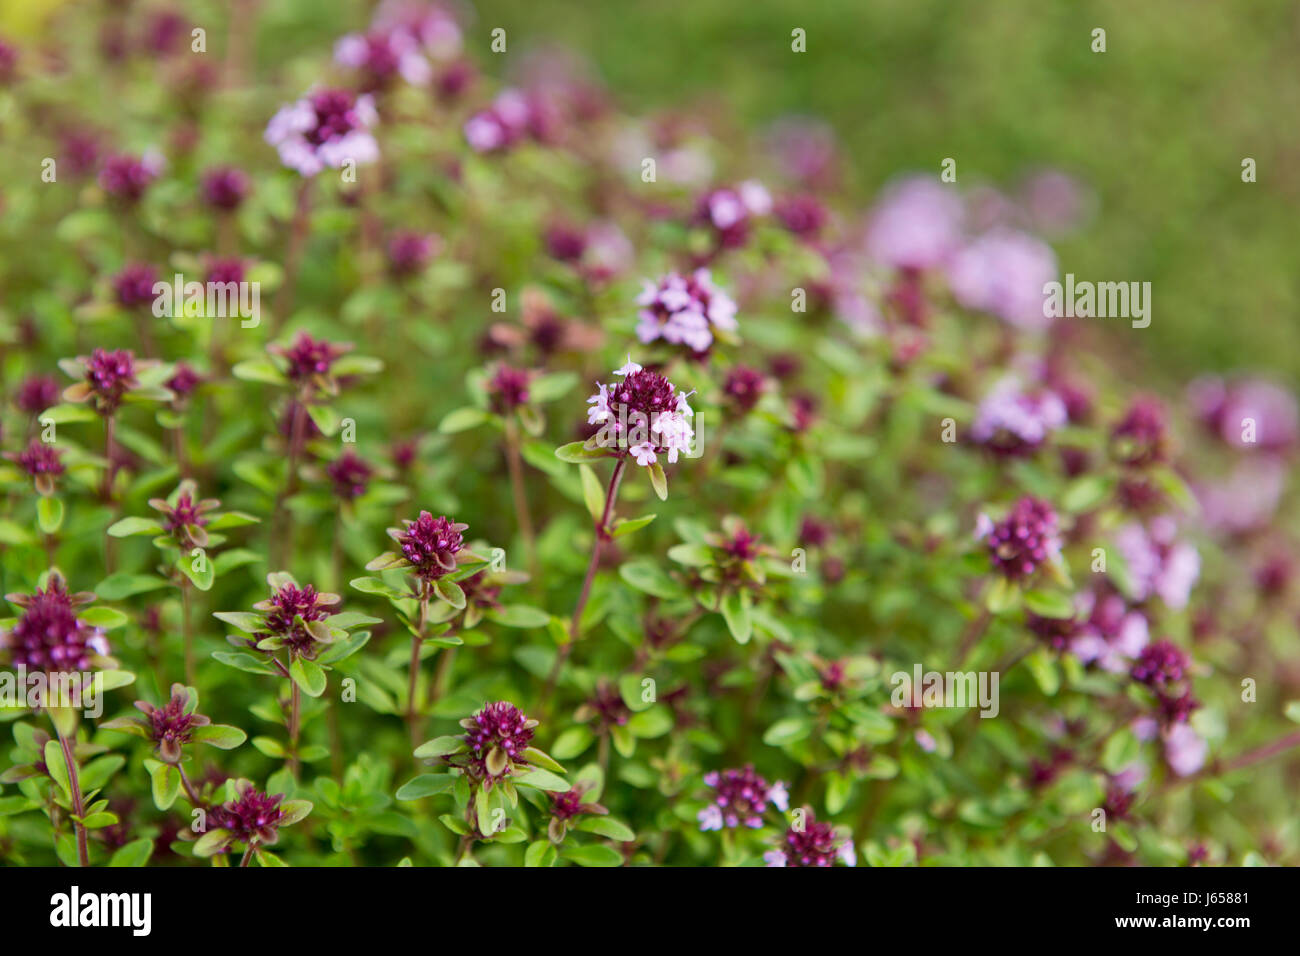 Flowering thyme, (thymus vulgaris). Stock Photo